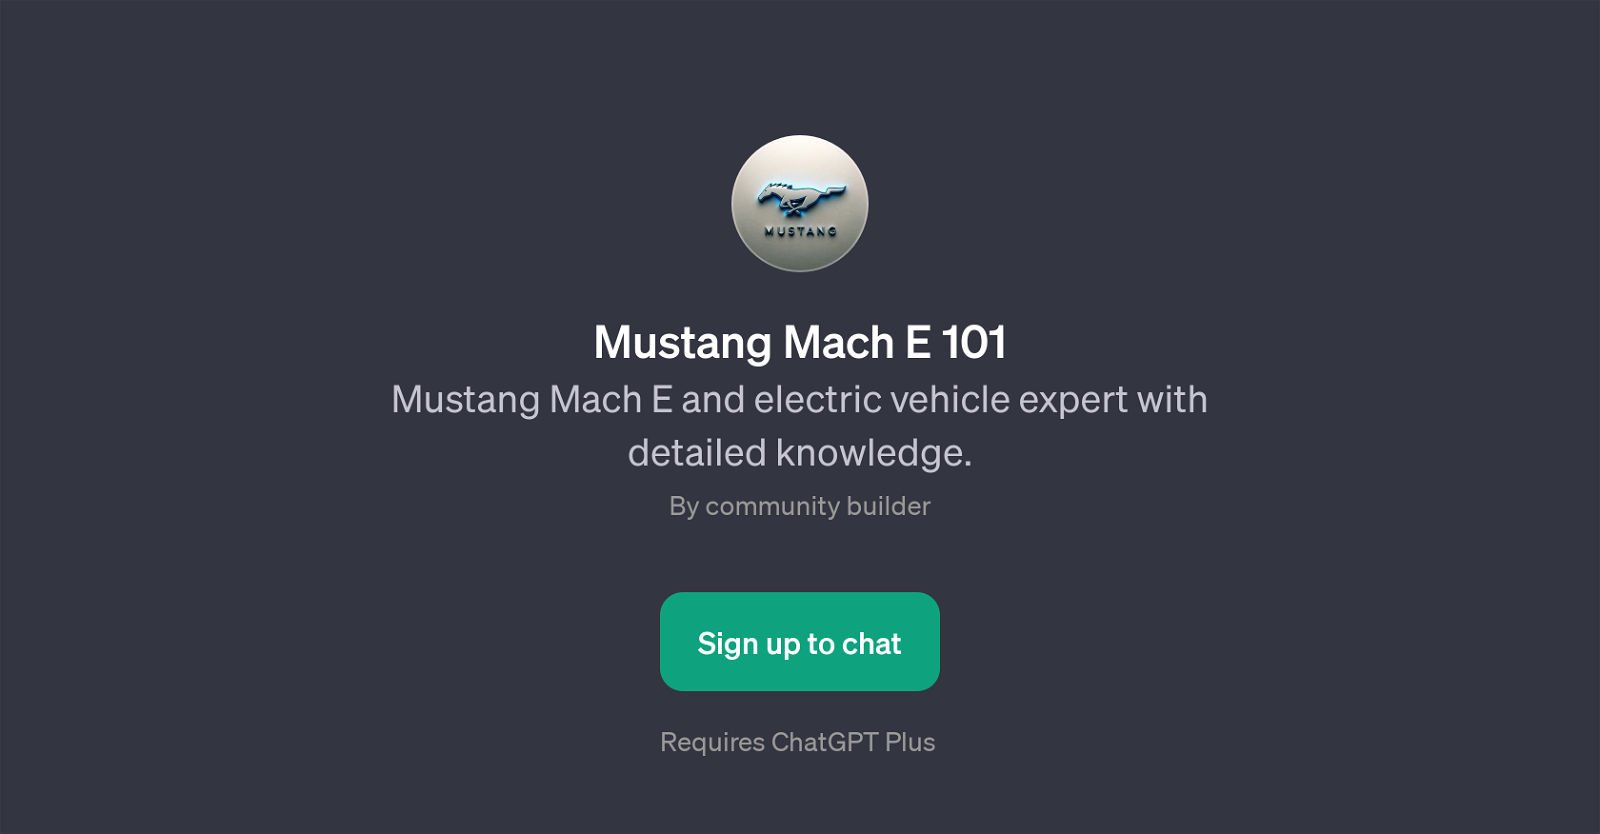 Mustang Mach E 101 website